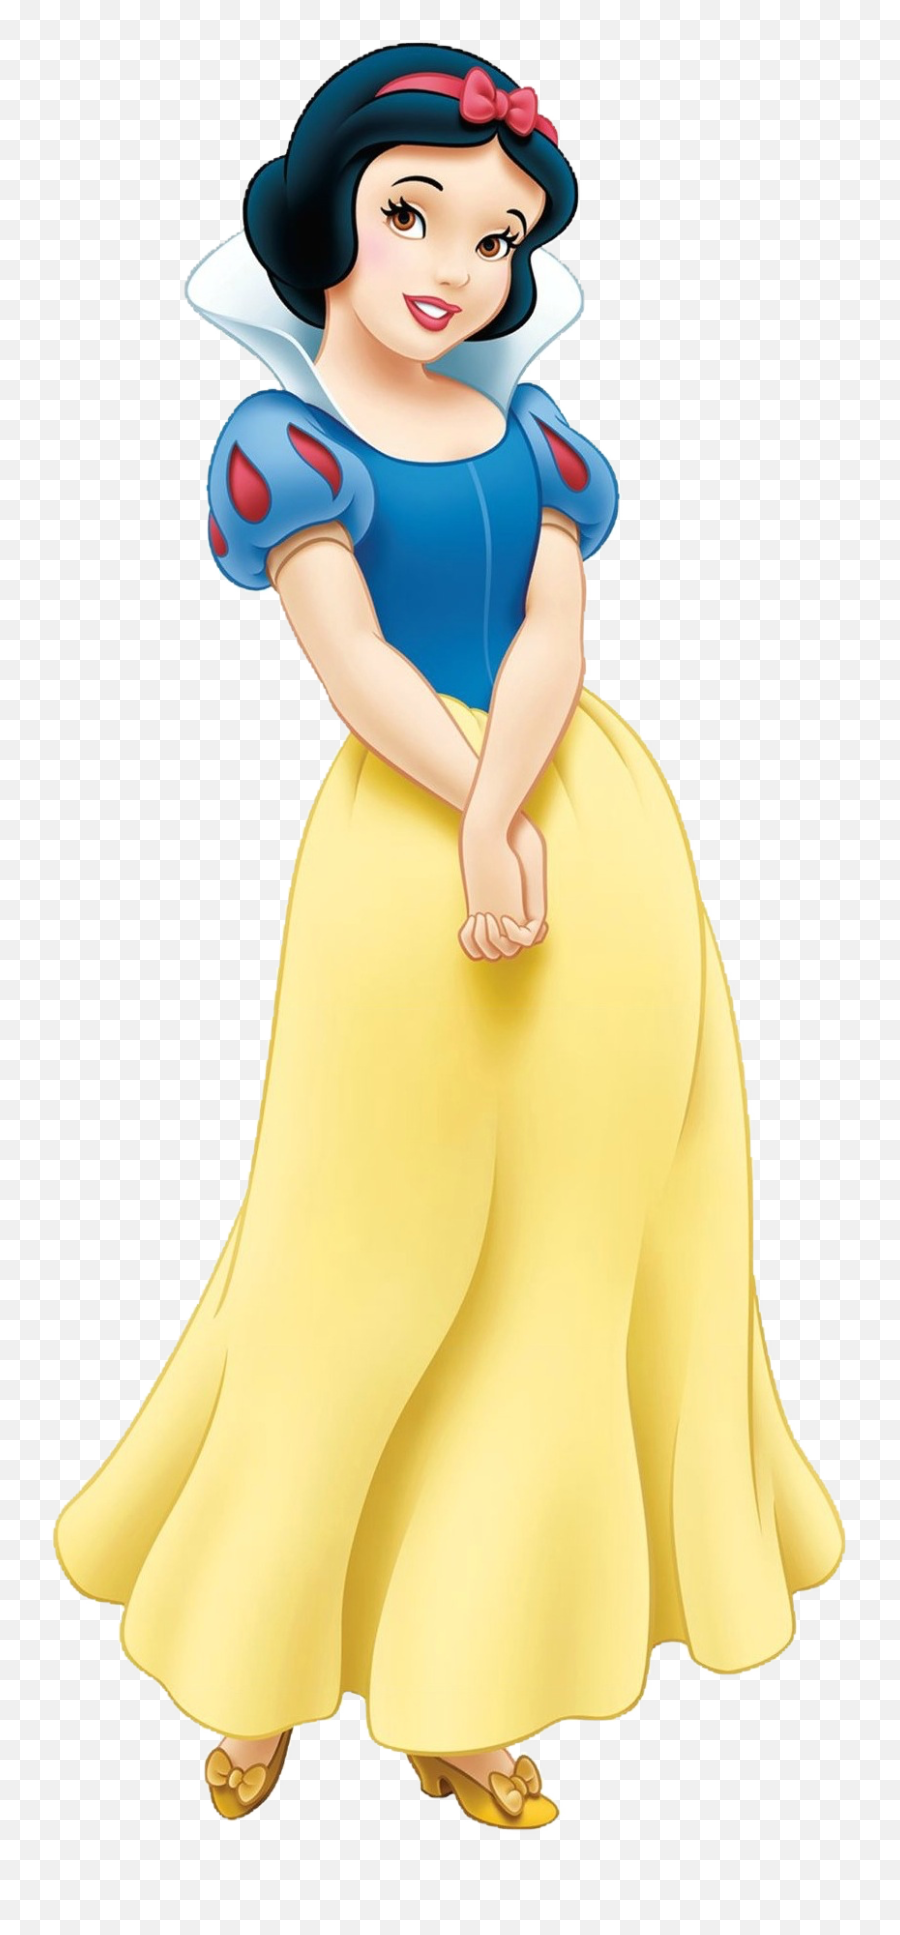 Words In Pictures Mundanevision - Princess Snow White Transparent Emoji,Ellen Emojis